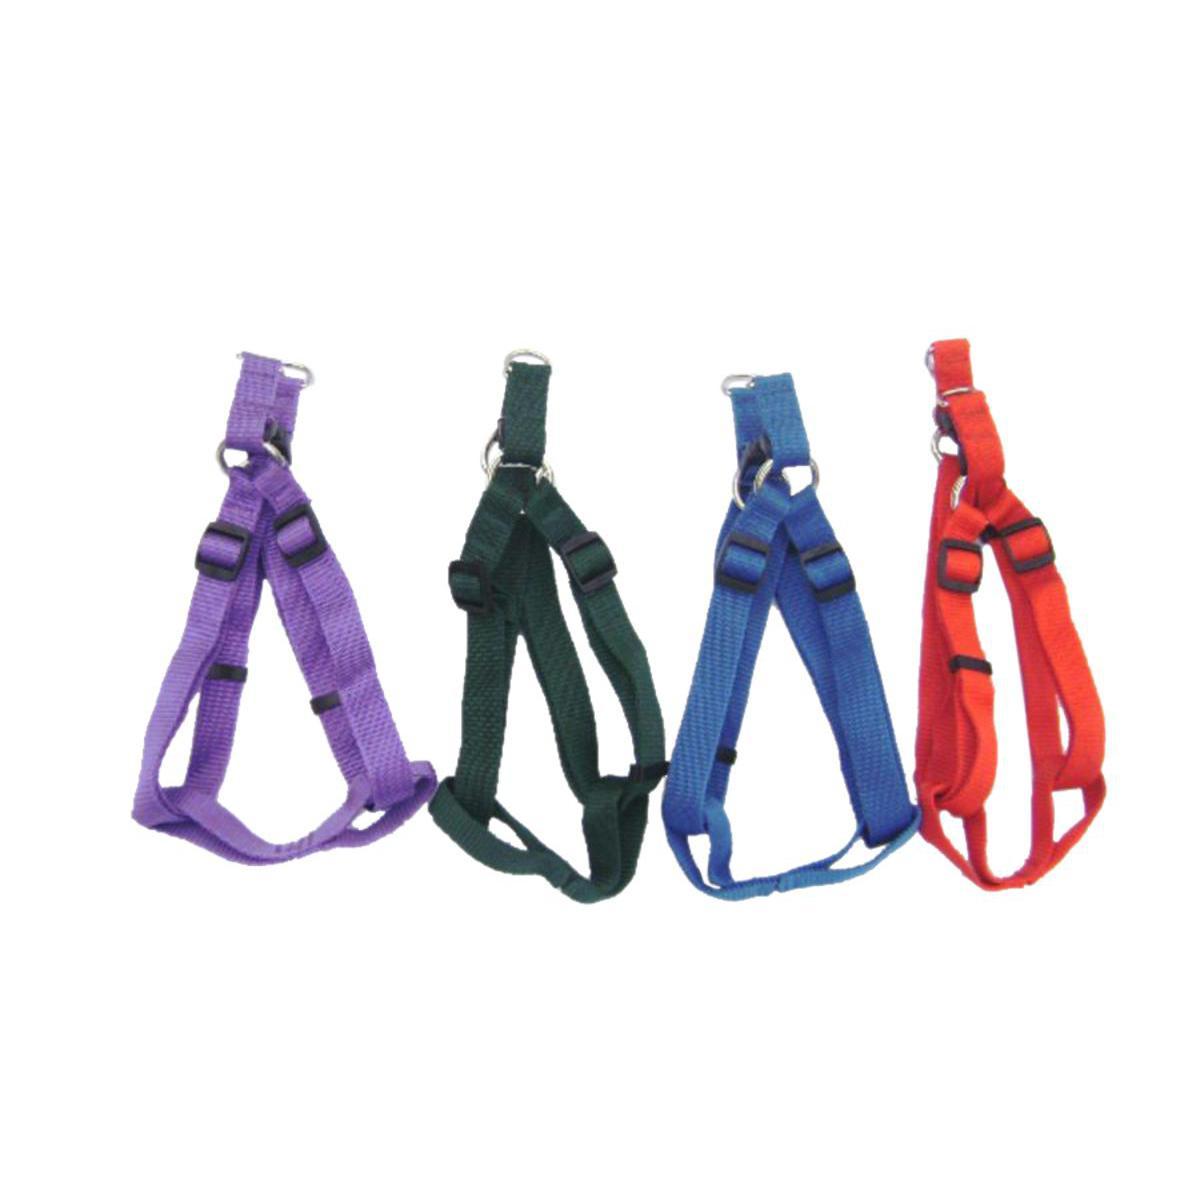 Harnais petit modèle - Nylon - 2 x 16 à 23 cm - Noir, violet, vert, rouge et bleu